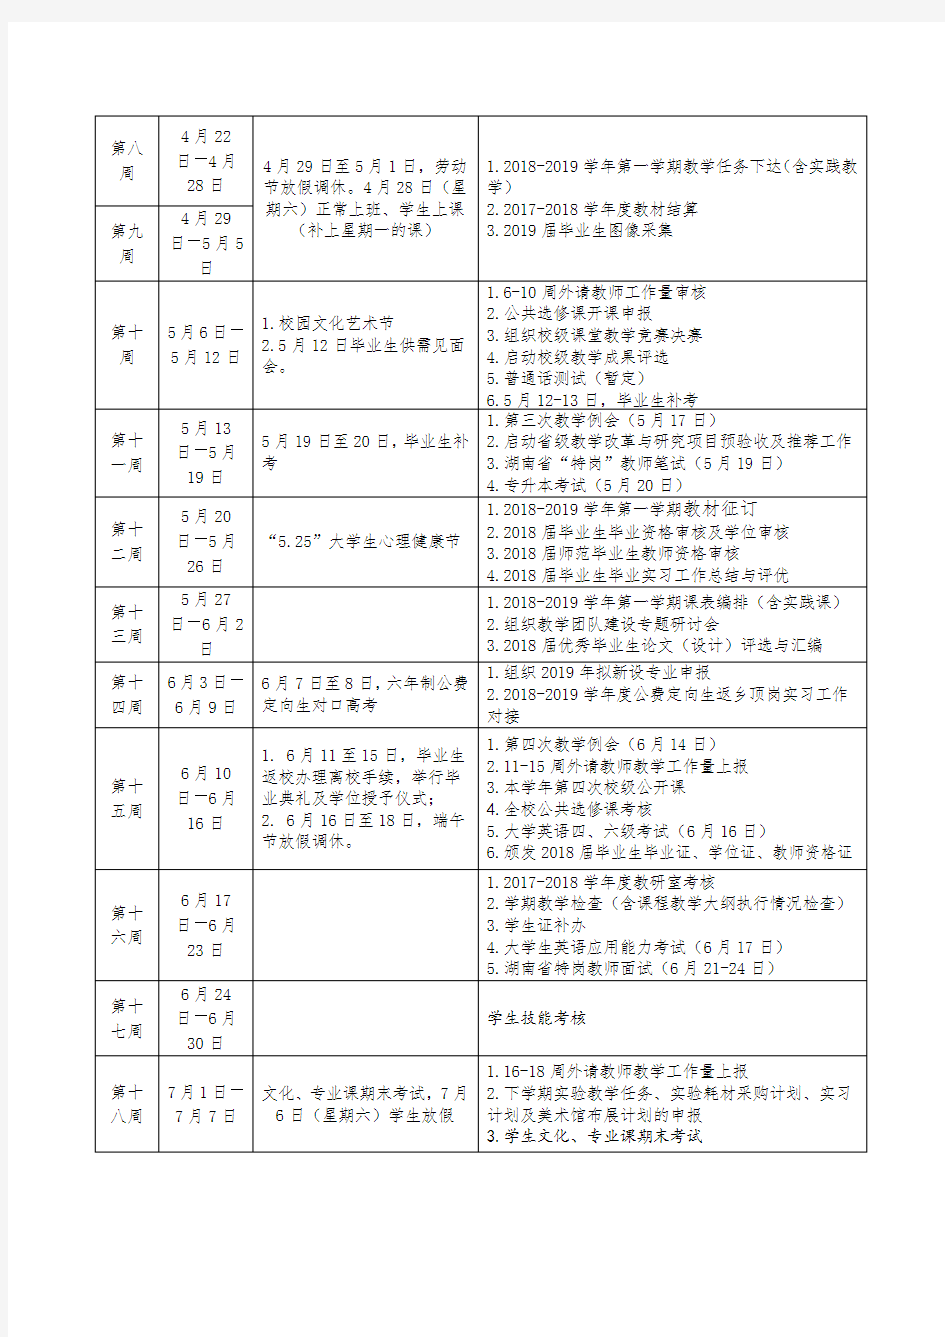 长沙师范学院2017-2018学年第二学期教学校历